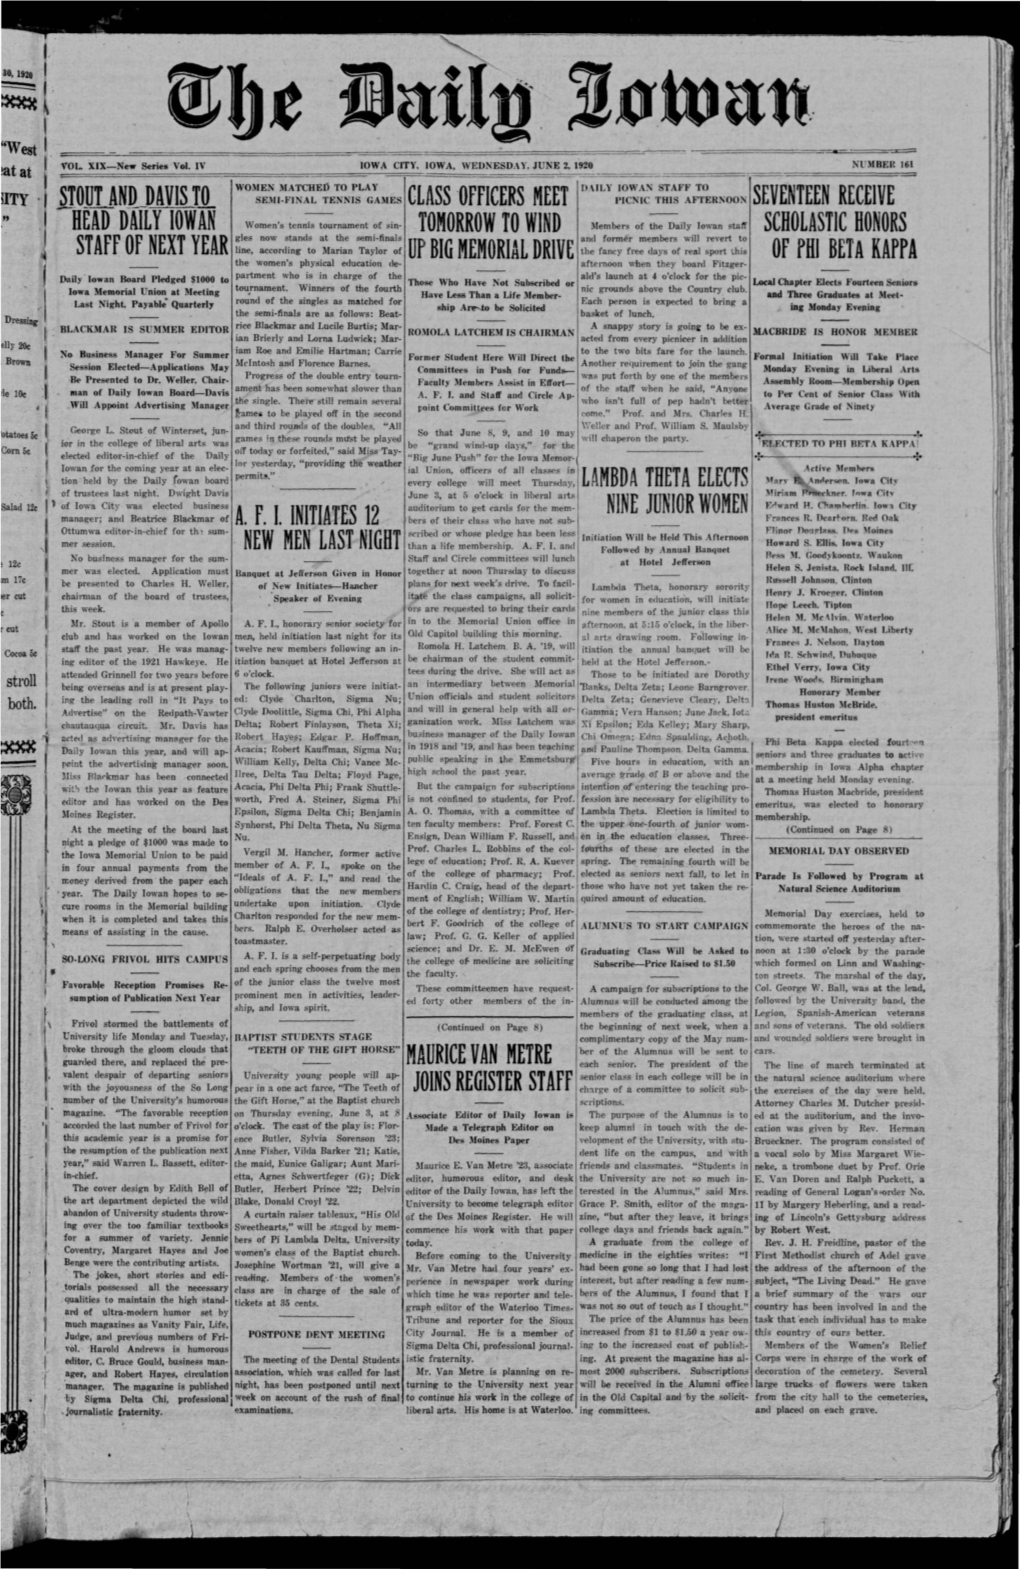 Daily Iowan (Iowa City, Iowa), 1920-06-01